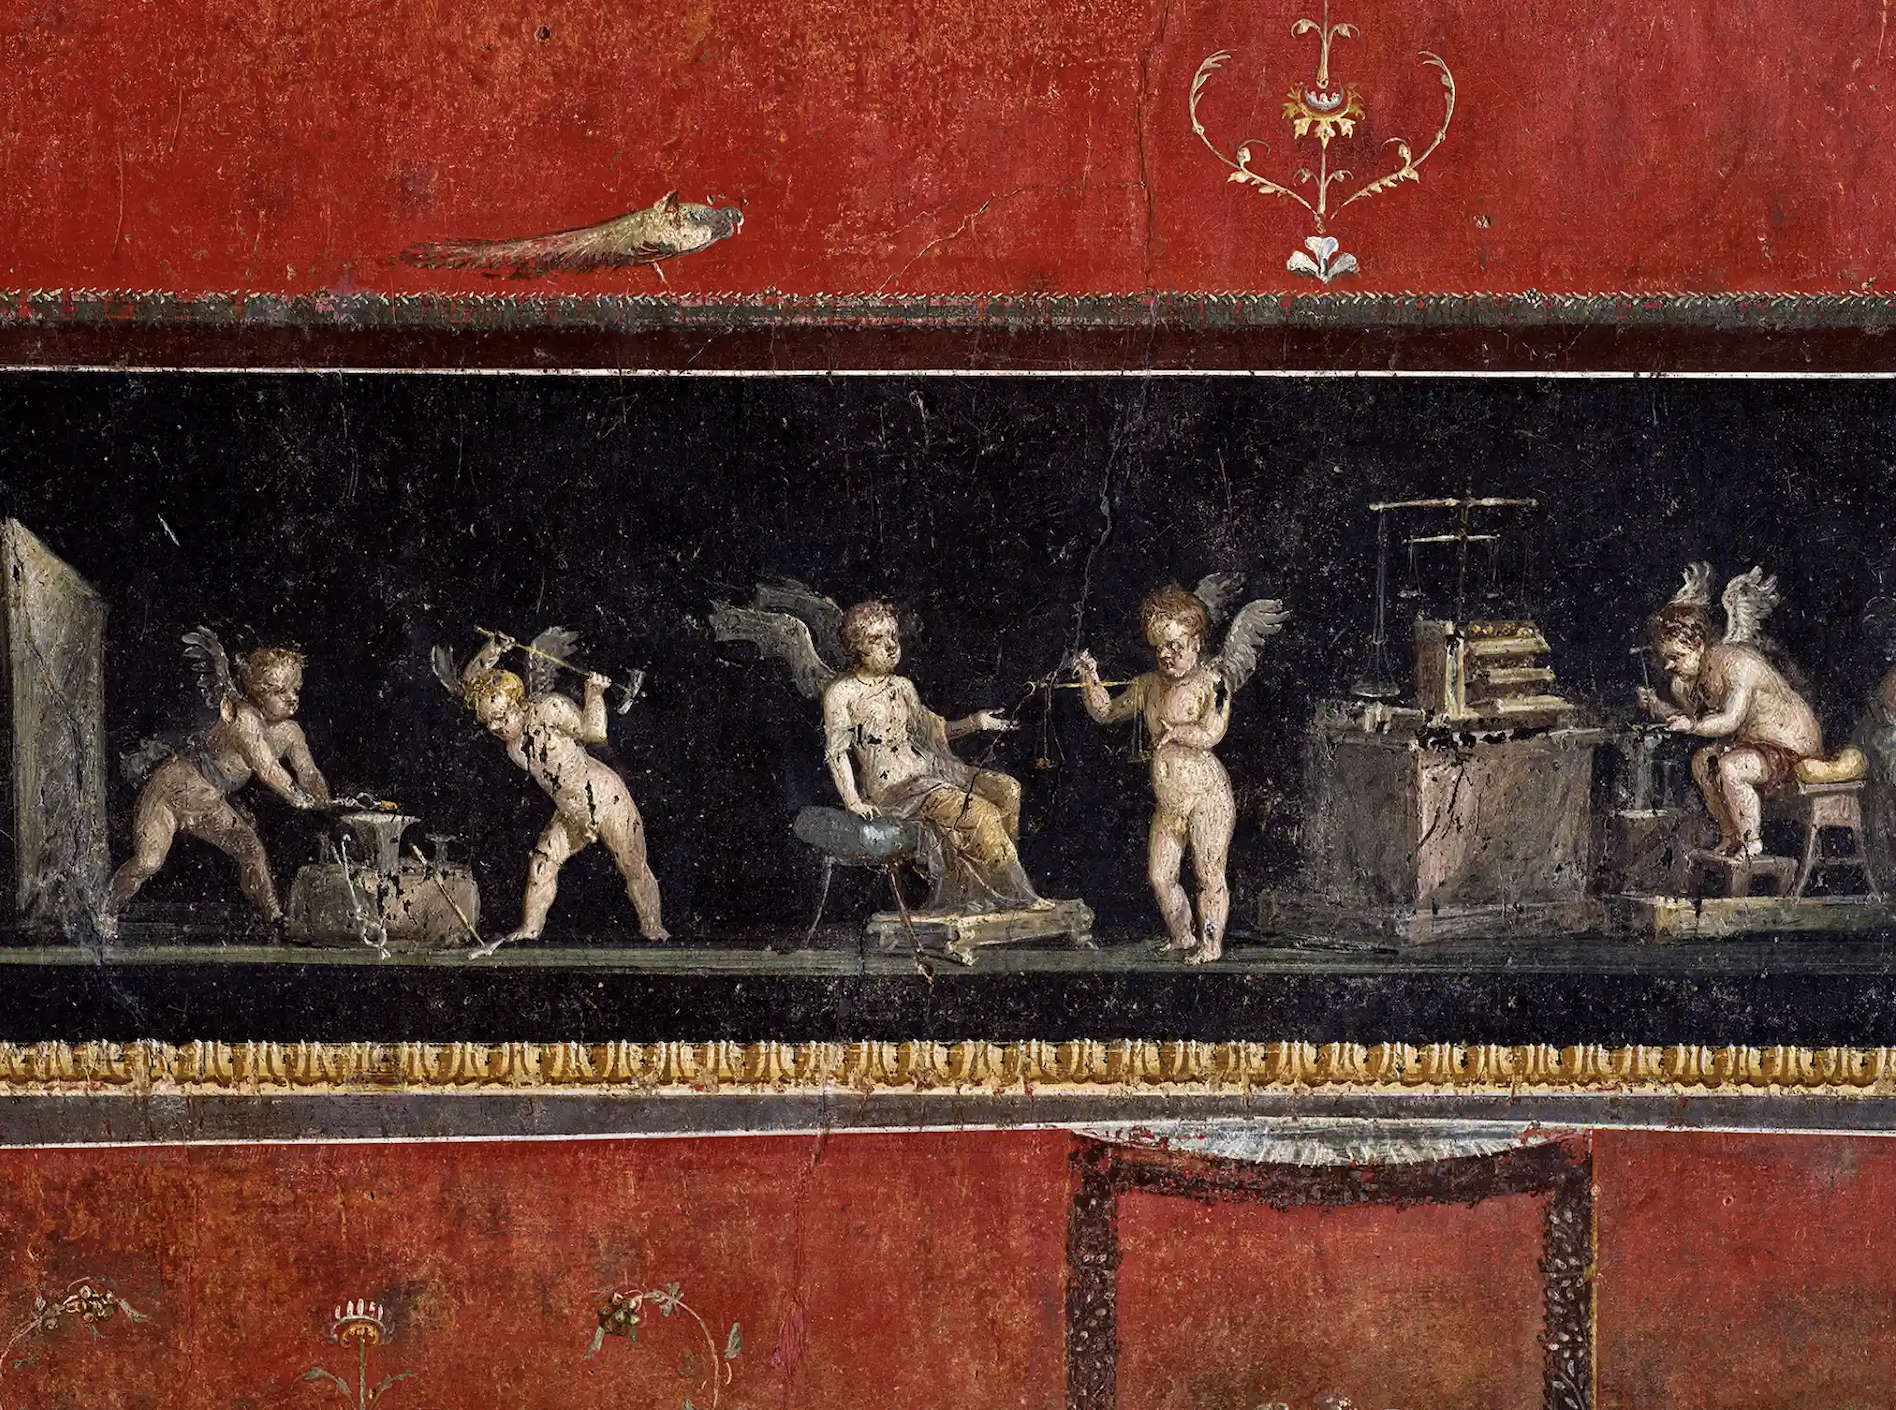 Giám đốc của Pompeii, Gabriel Zuchtriegel cho biết: “Chúng tôi đang xem ở đây giai đoạn cuối của bức tranh tường Pompeii với những chi tiết đáng kinh ngạc, vì vậy bạn có thể đứng trước những hình ảnh này hàng giờ mà vẫn khám phá ra những chi tiết mới”. Ảnh: Luigi Spina